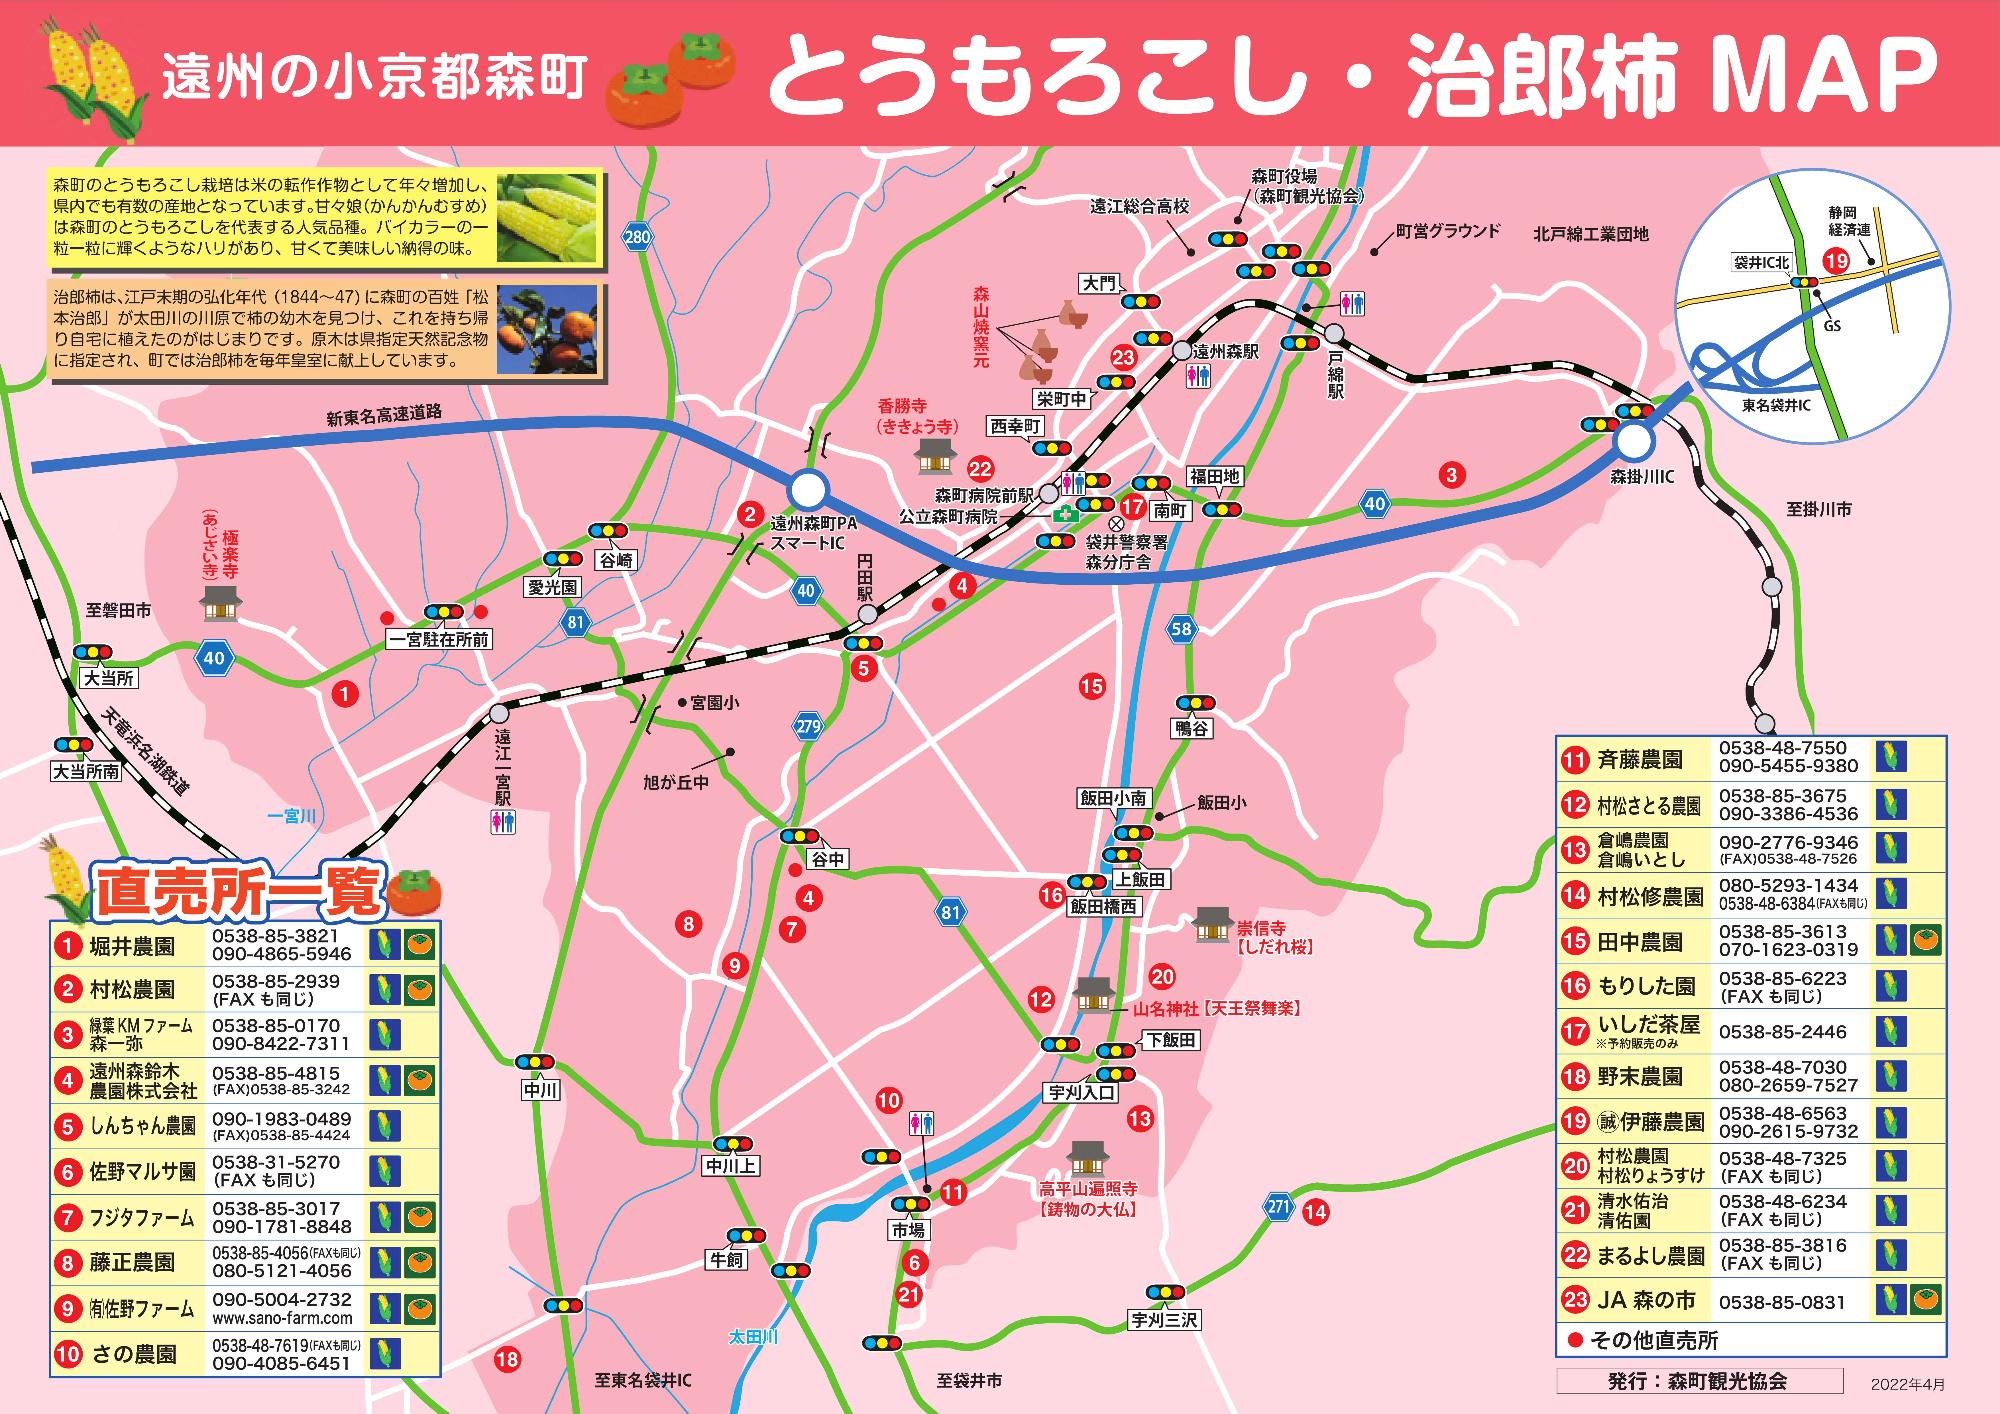 遠州の小京都 森町 とうもろこし・治郎柿MAP